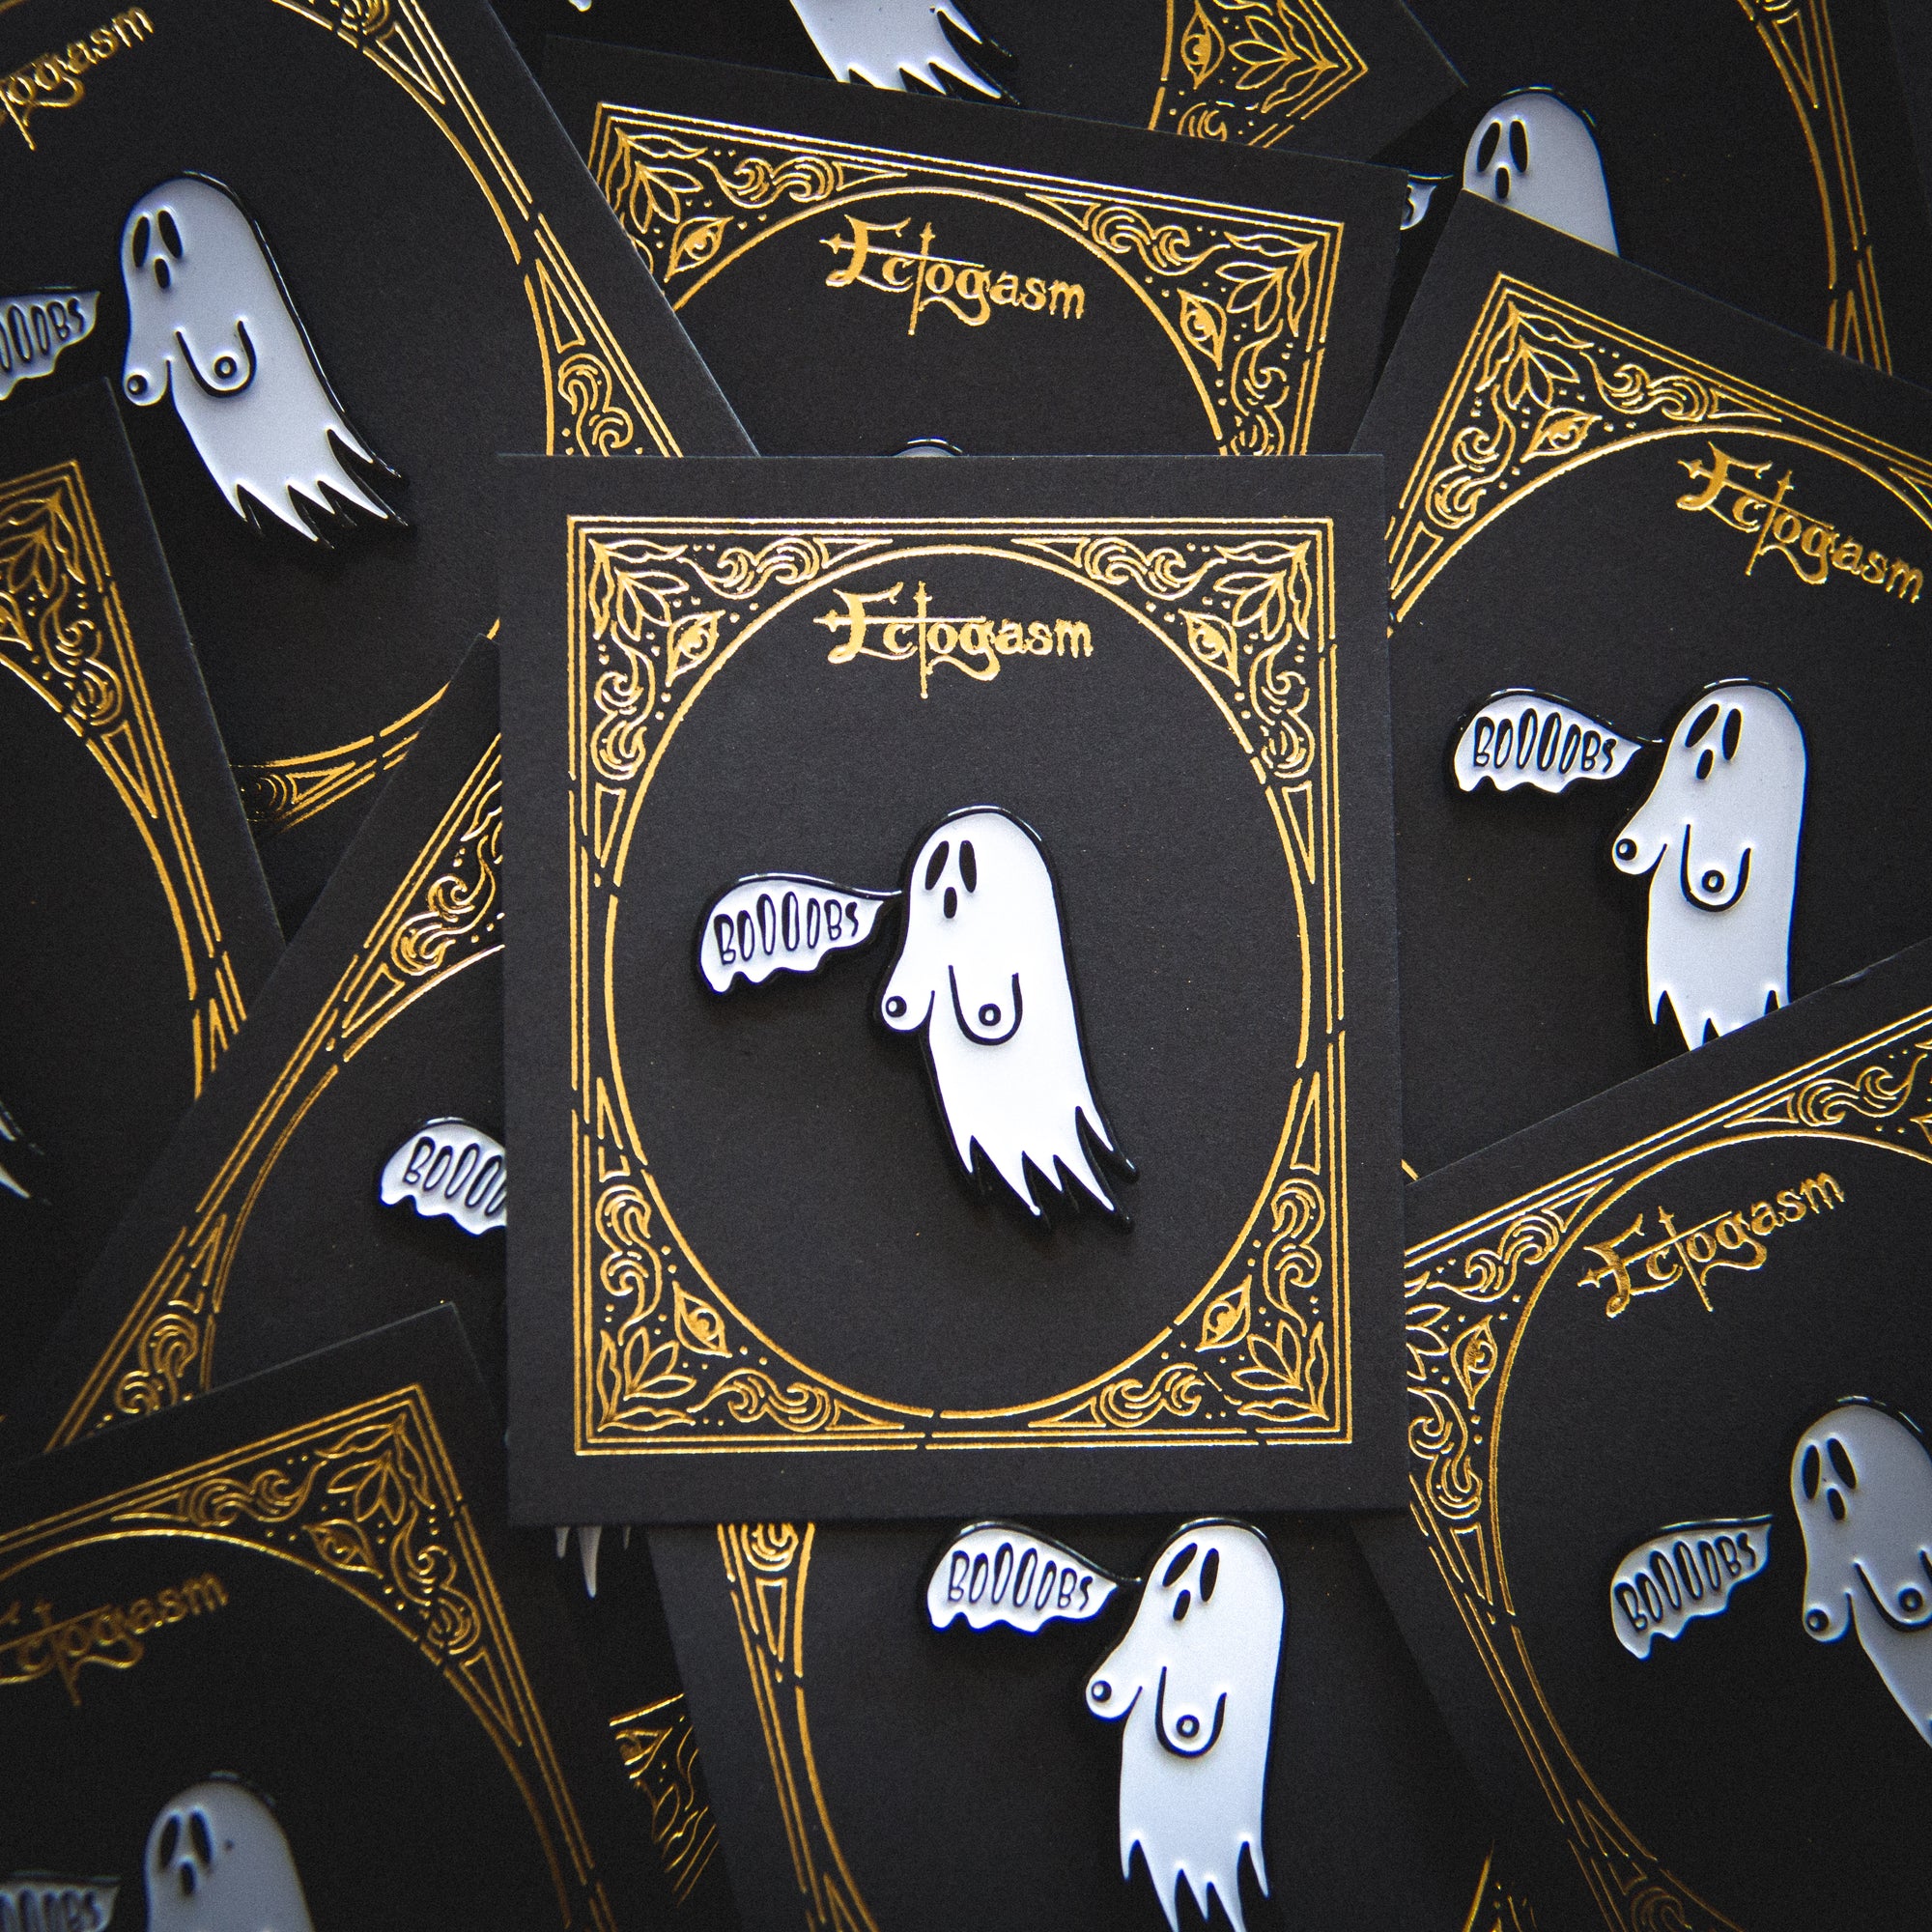 Boobs: Funny Ghost Goth Fashion Halloween Enamel Pin - Becca